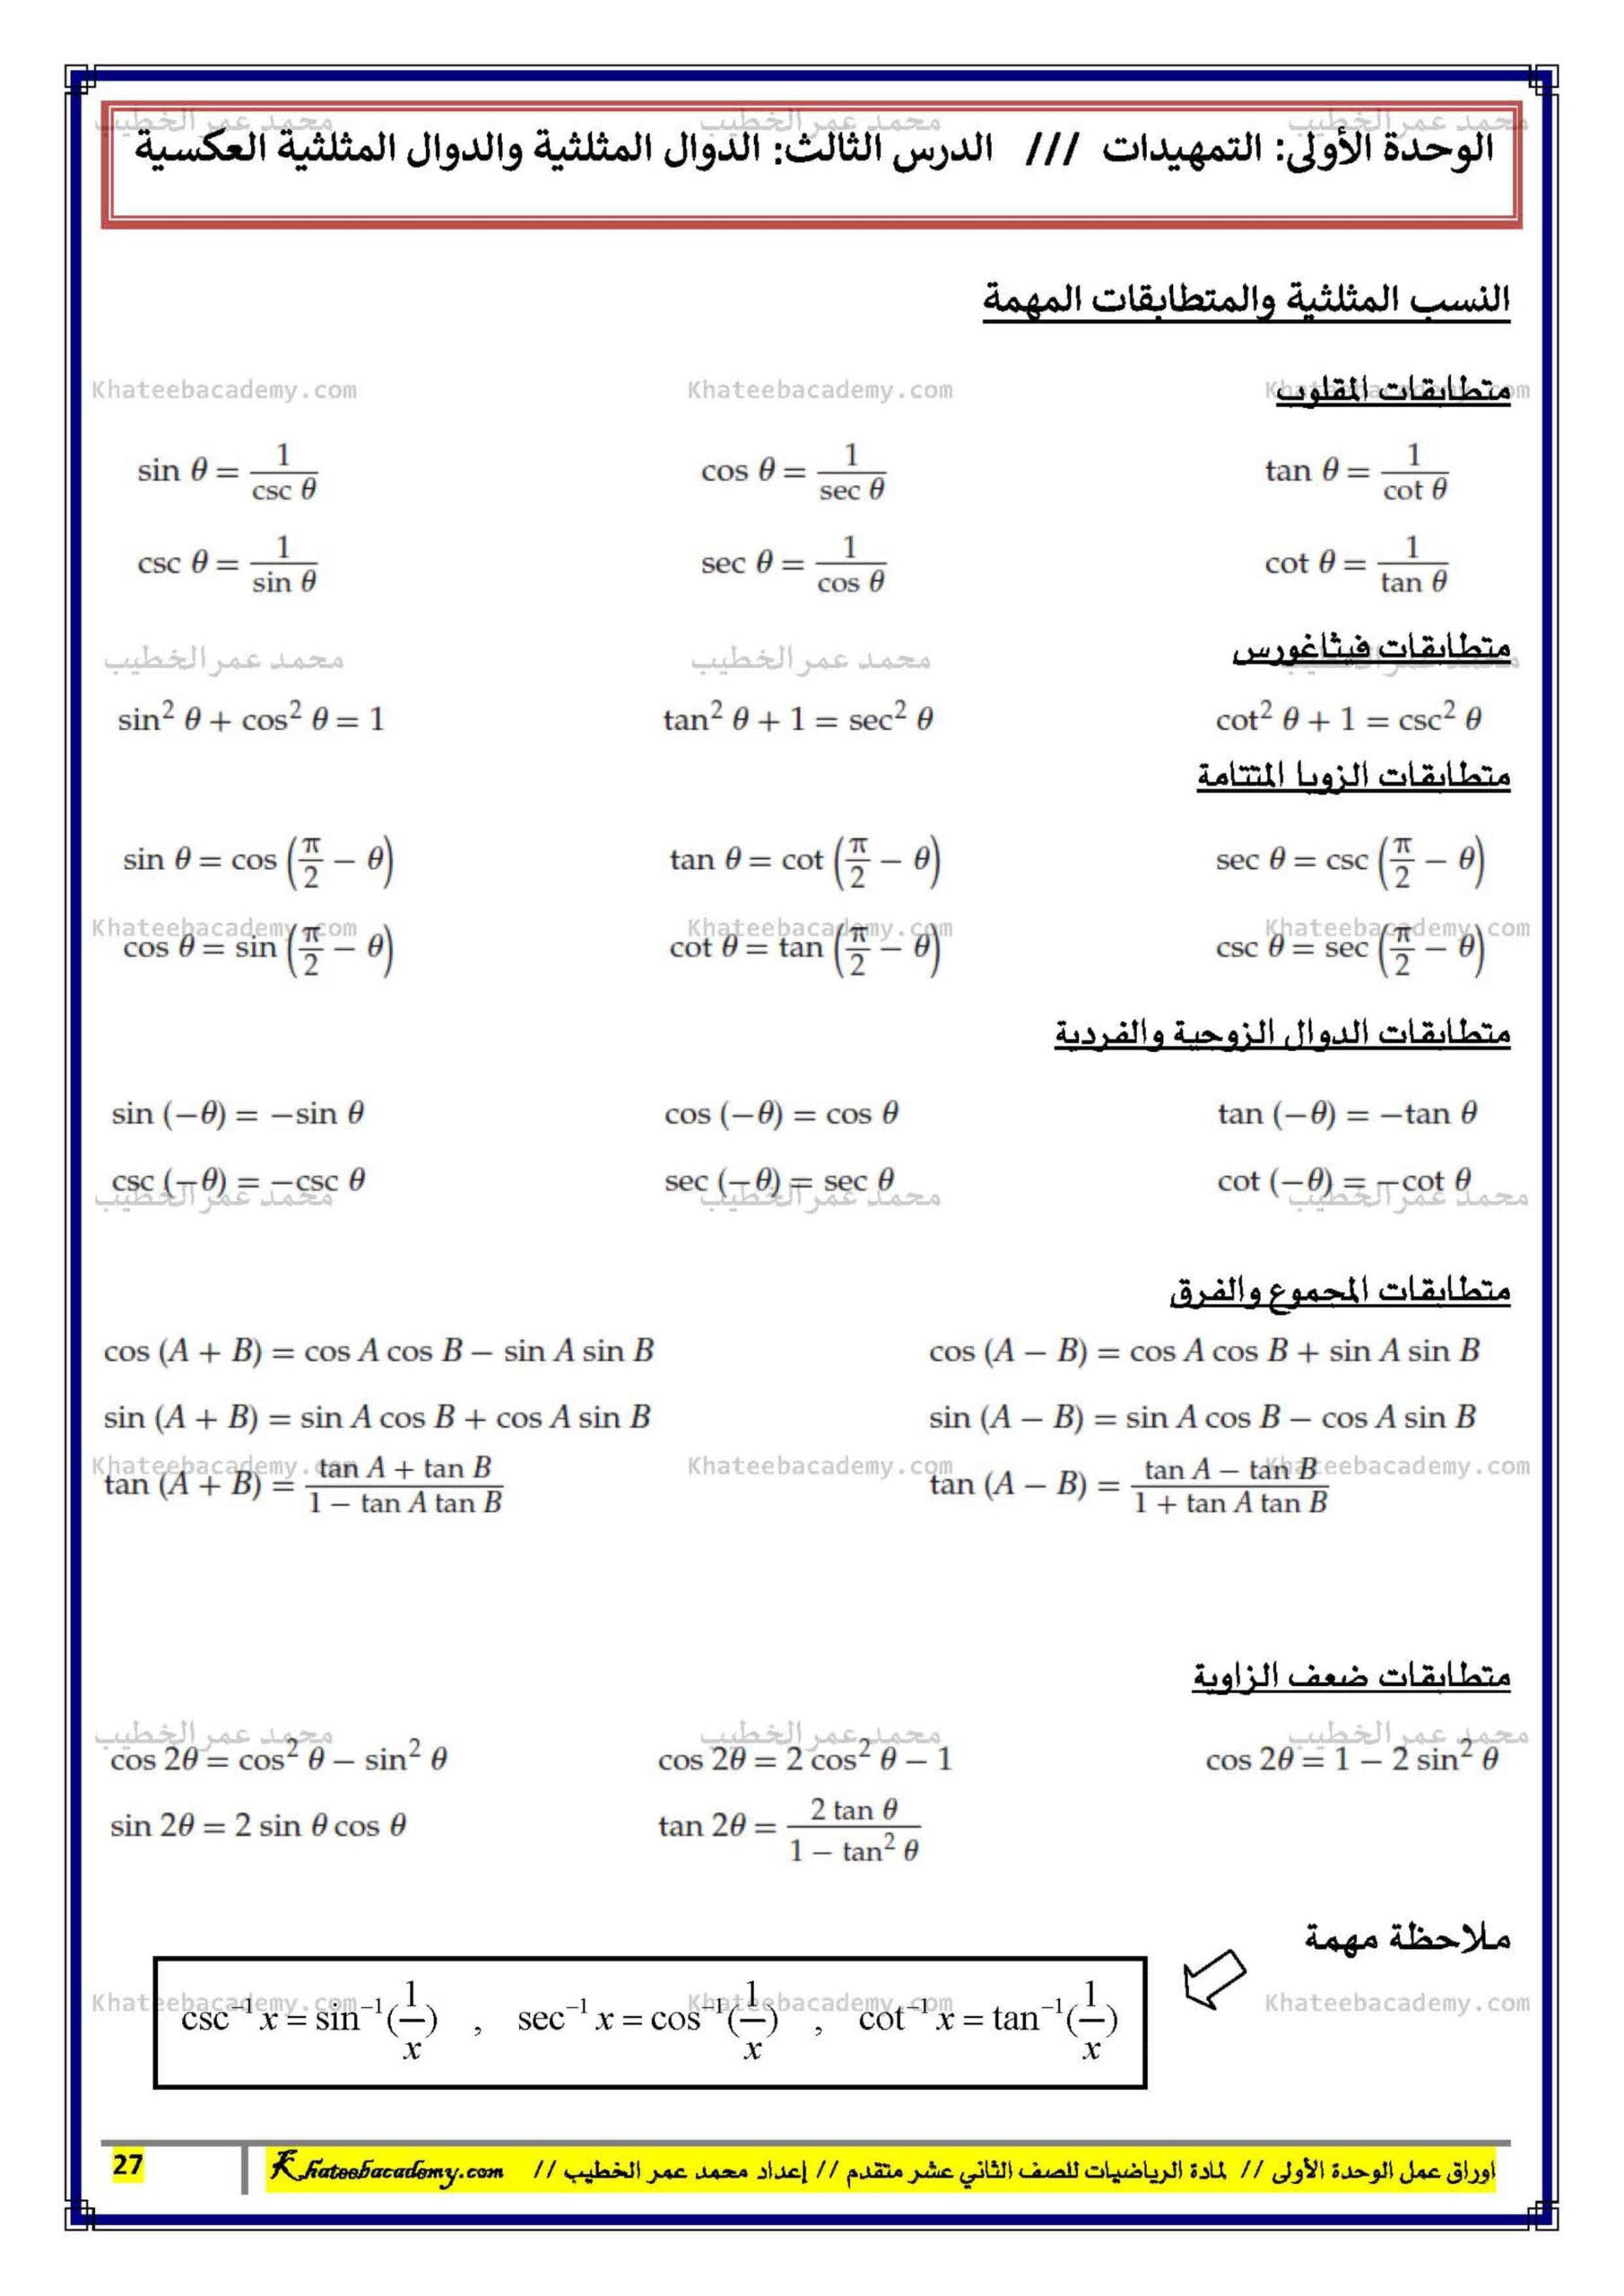 الأساسيات المهمة للامتحان النهائي الرياضيات المتكاملة الصف الثاني عشر 